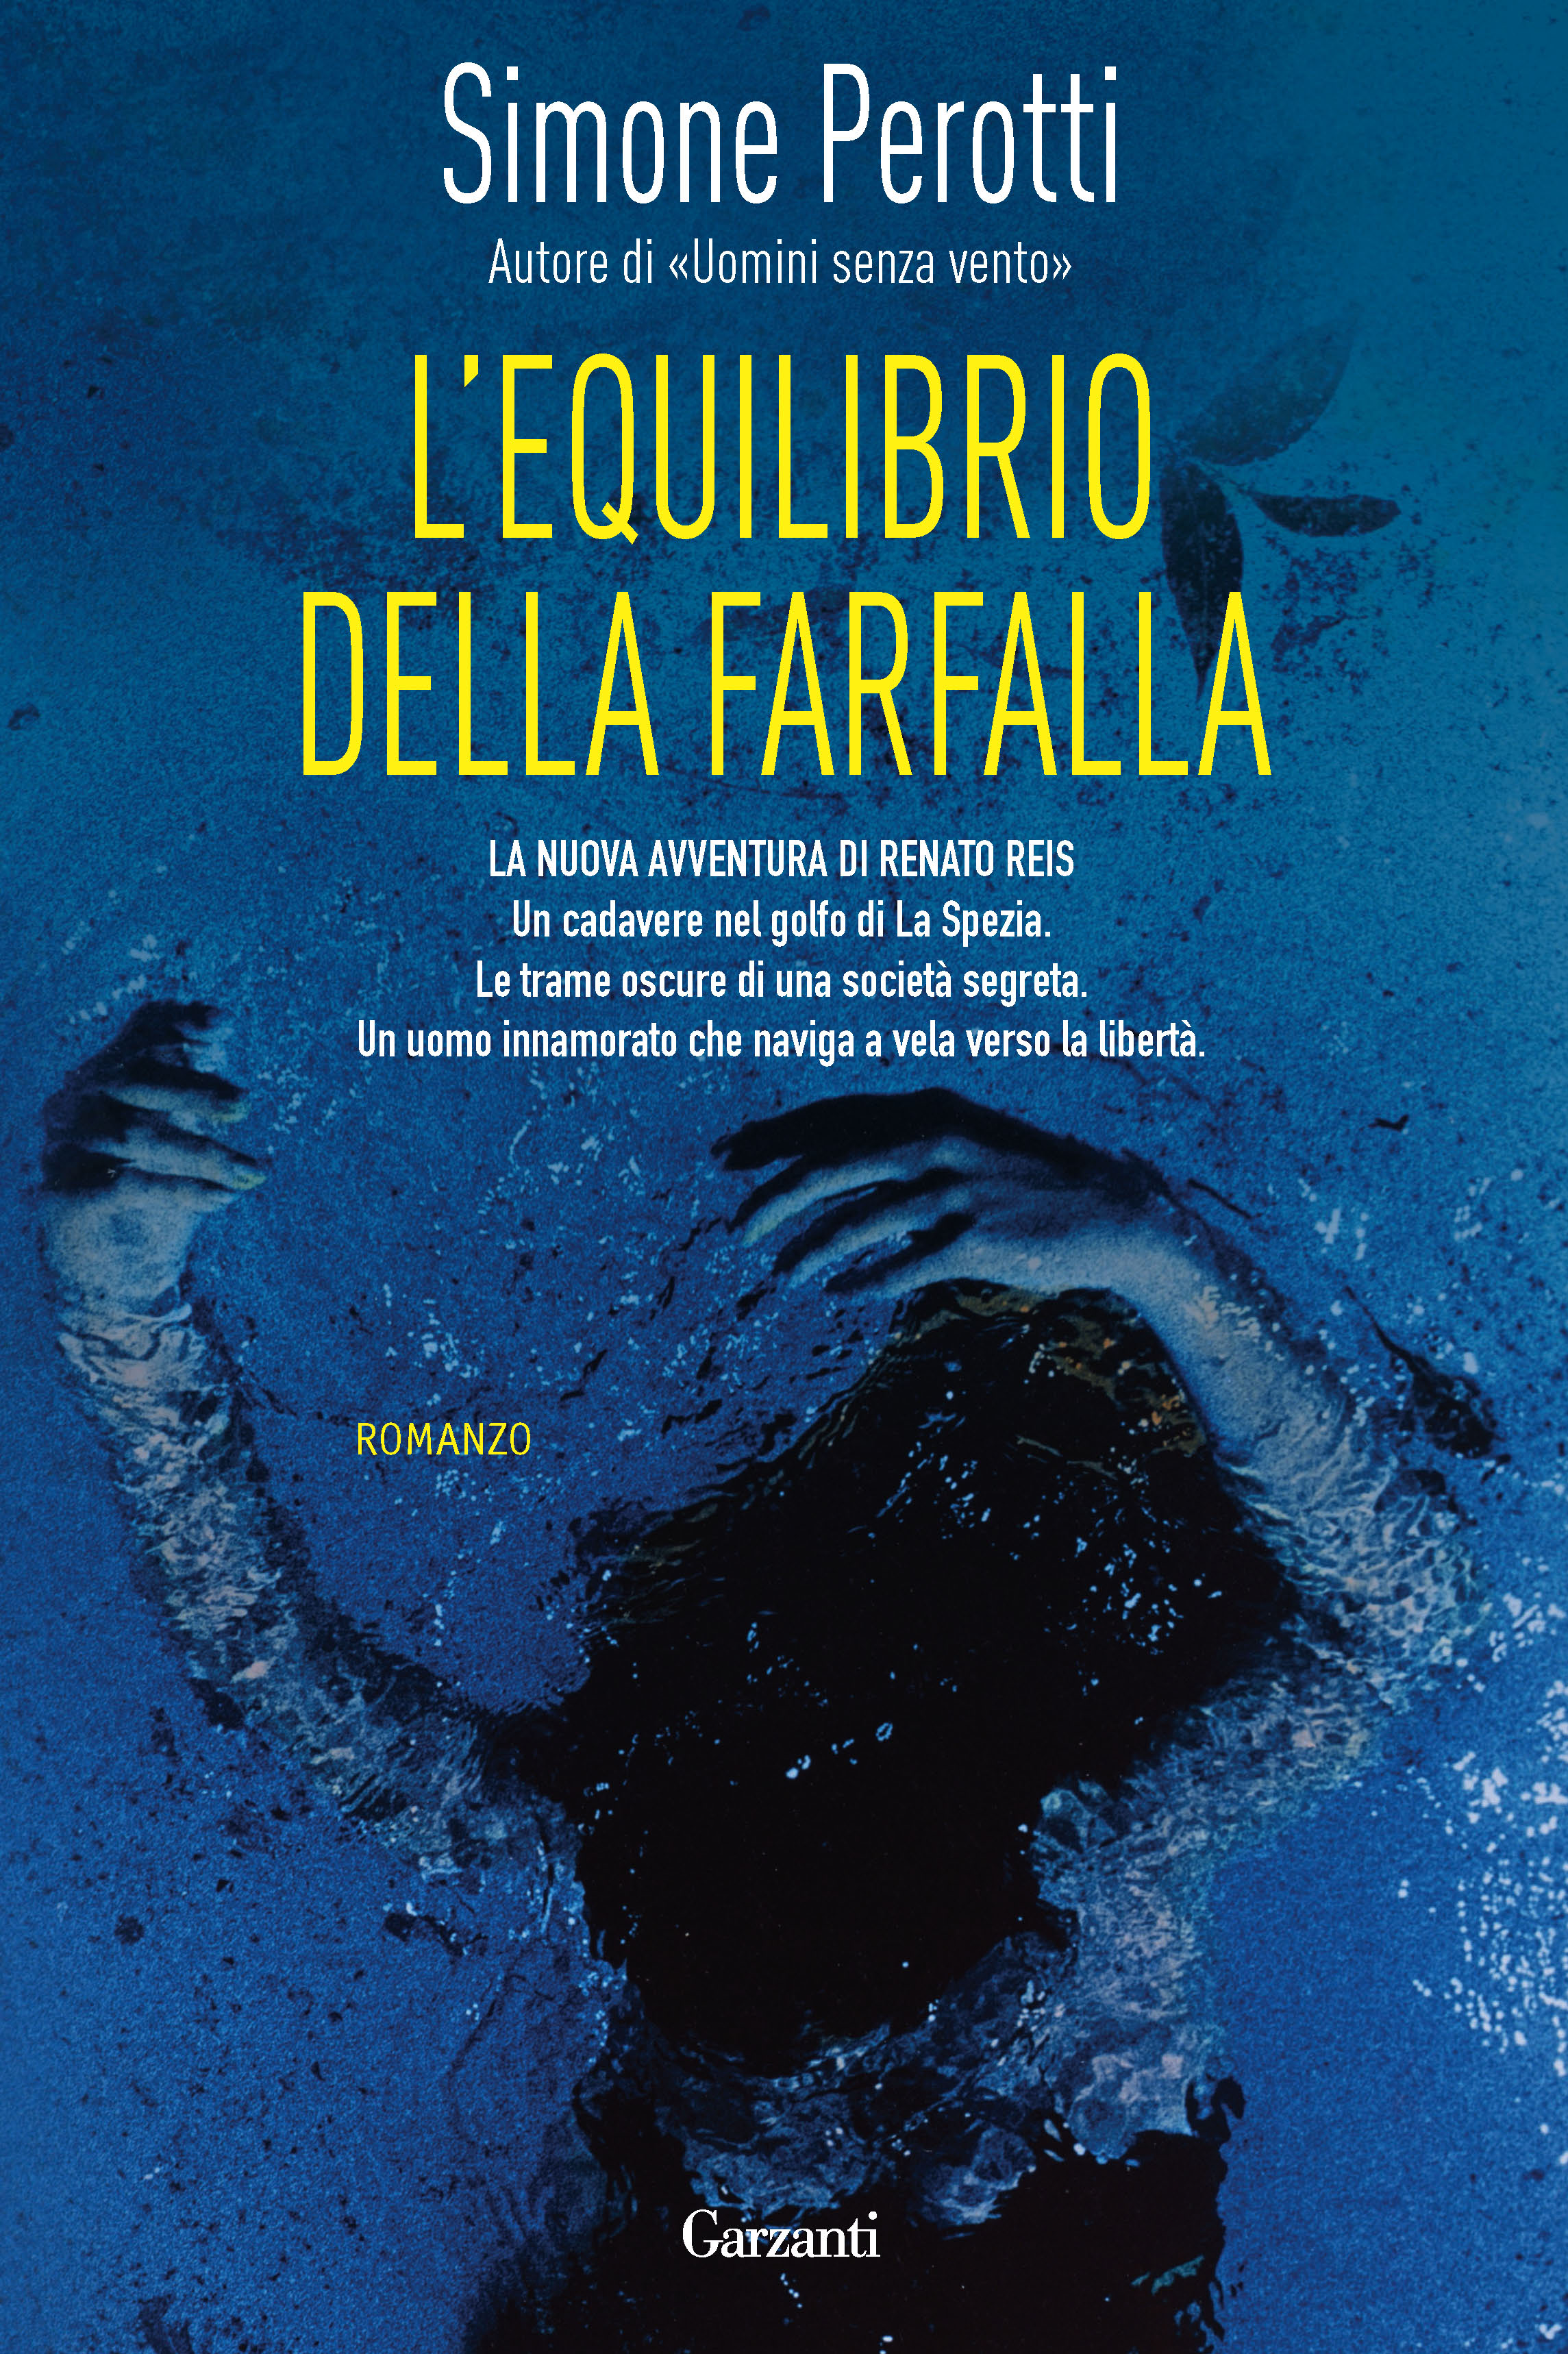 L’equilibrio della farfalla, il nuovo romanzo di Simone Perotti